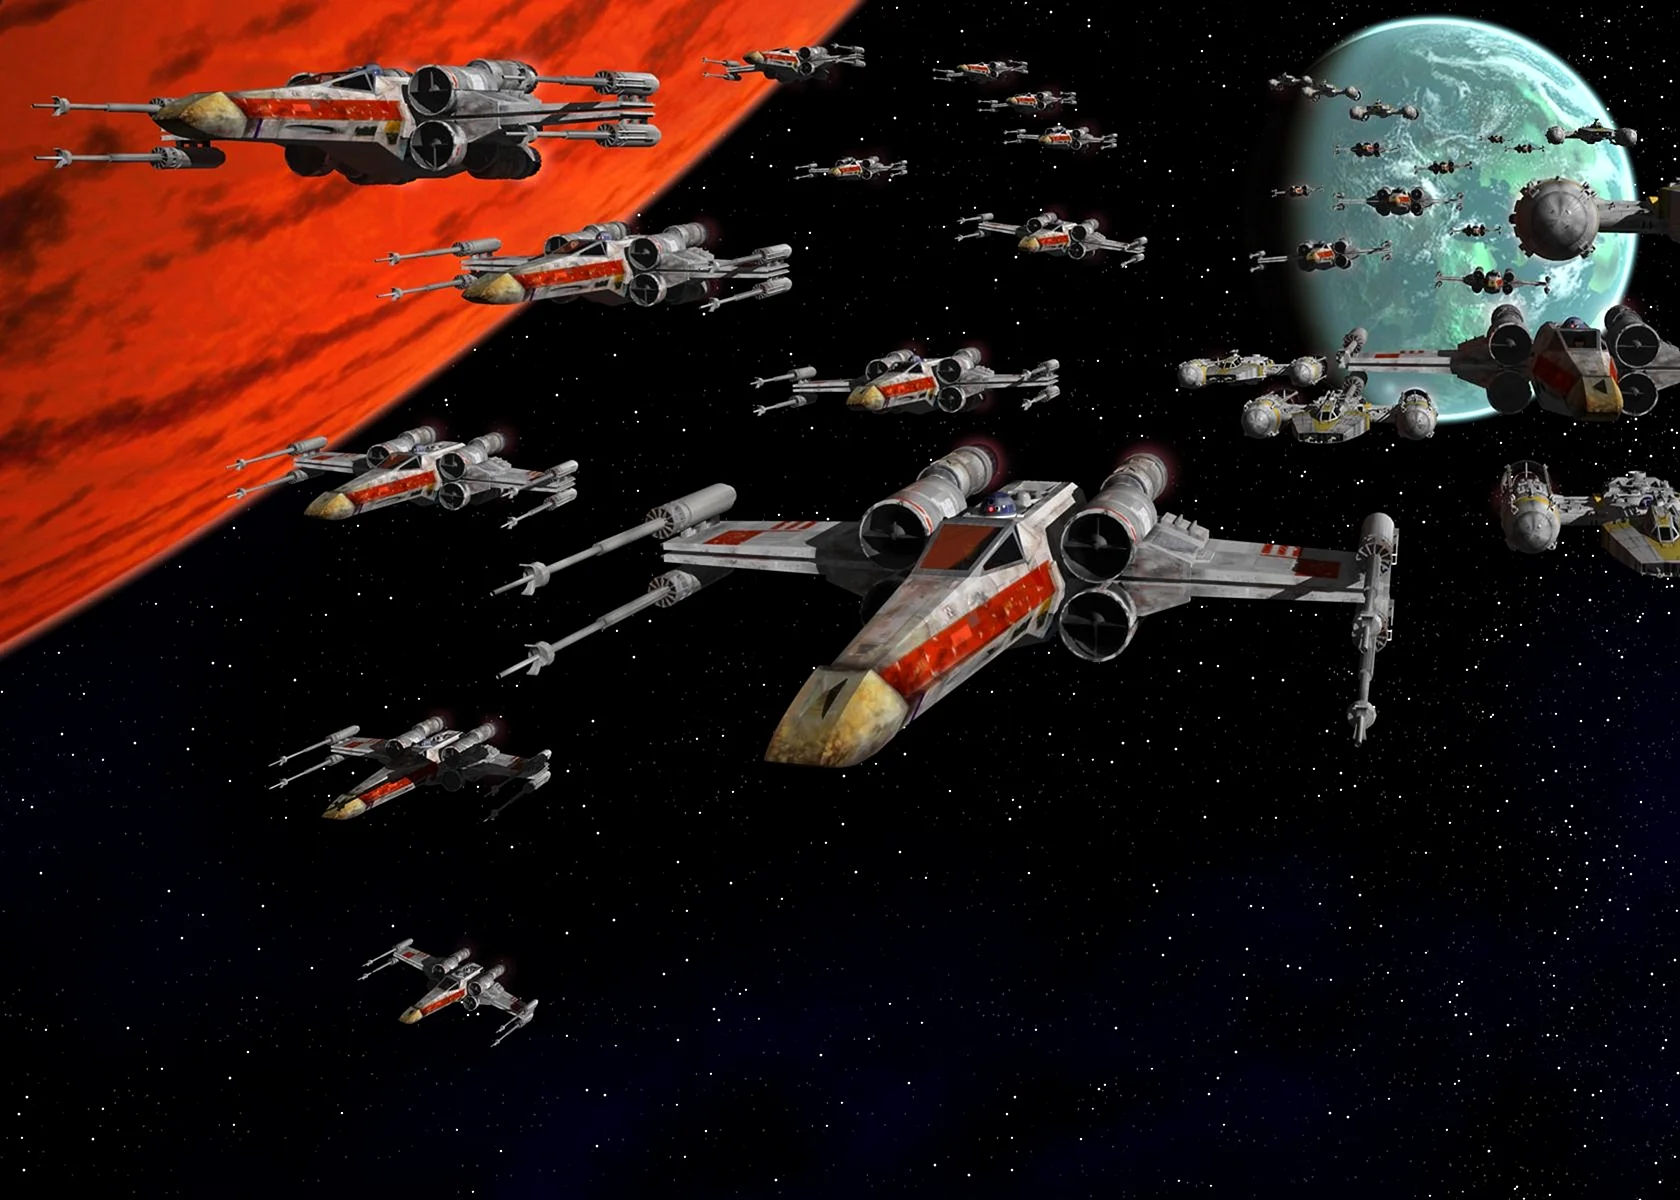 Star Wars Battle Of Yavin Wallpaper